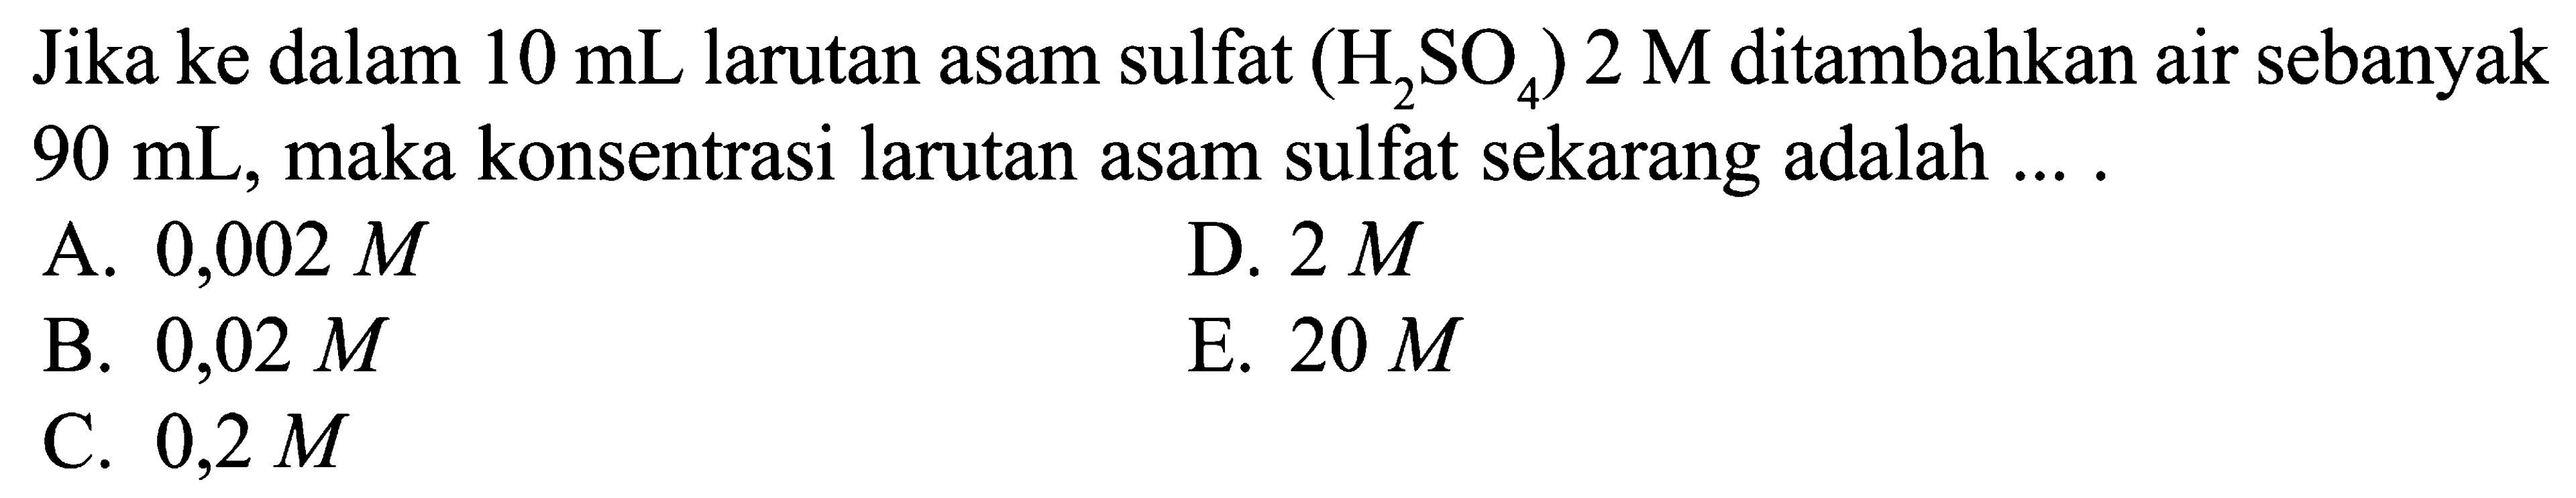 Jika ke dalam 10 mL larutan asam sulfat (H2SO4) 2 M ditambahkan air sebanyak 90 mL, maka konsentrasi larutan asam sulfat sekarang adalah .... 